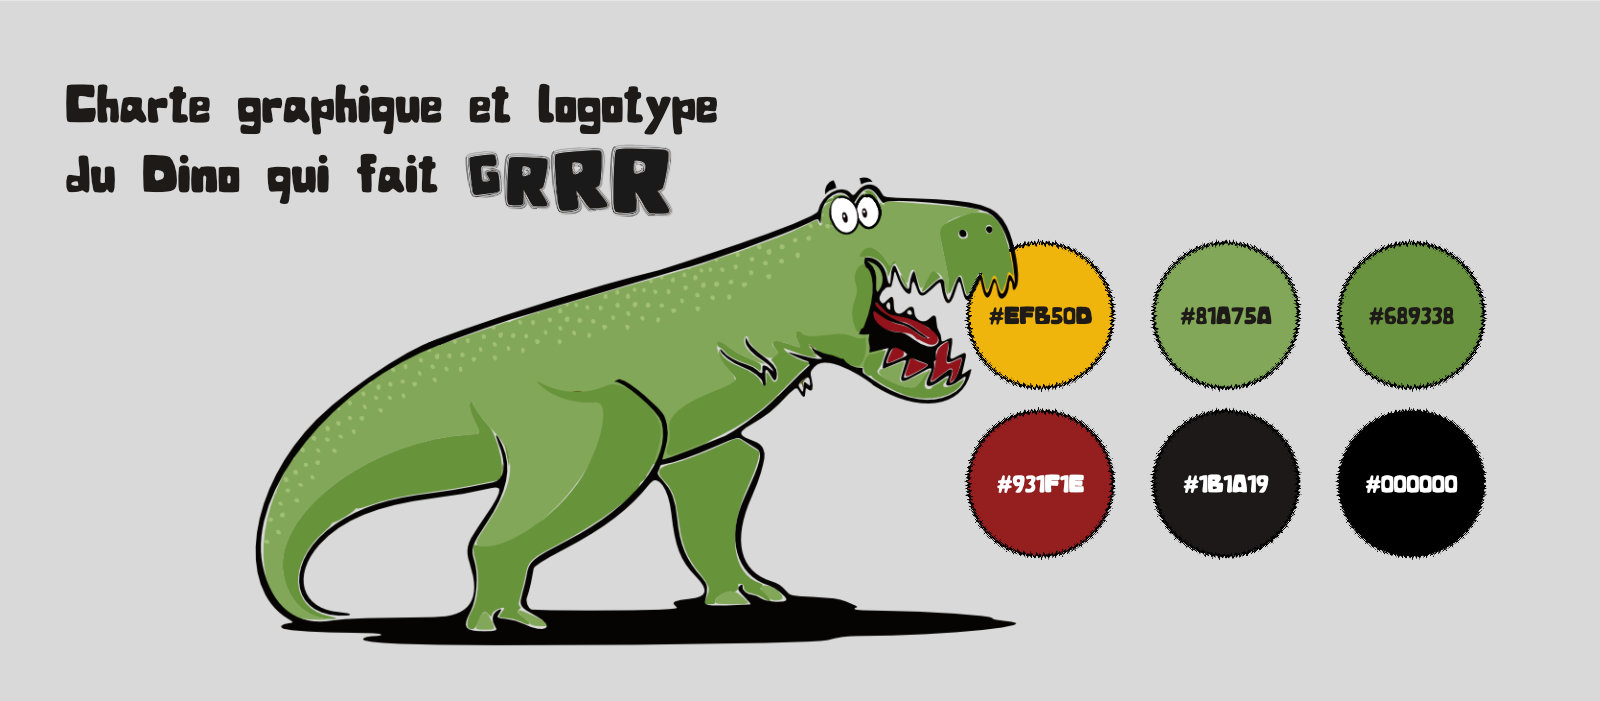 Le Dino qui fait GRRR : charte graphique, logotype et couleurs